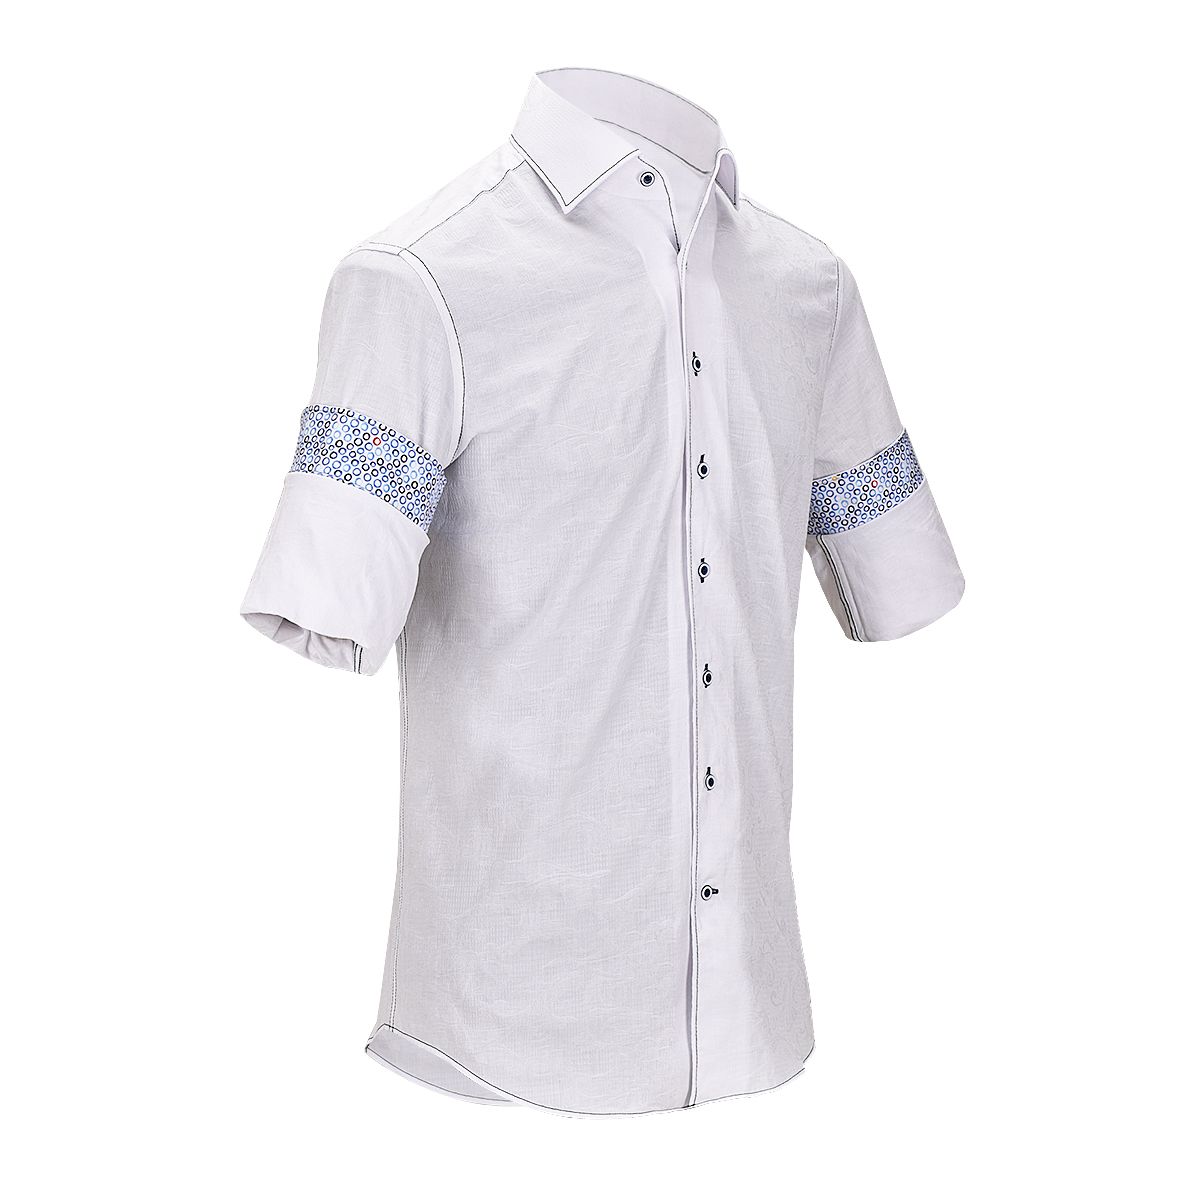 CMW466R - Cuadra white fashion casual soft cotton paisley shirt for men-CUADRA-Kuet-Cuadra-Boots